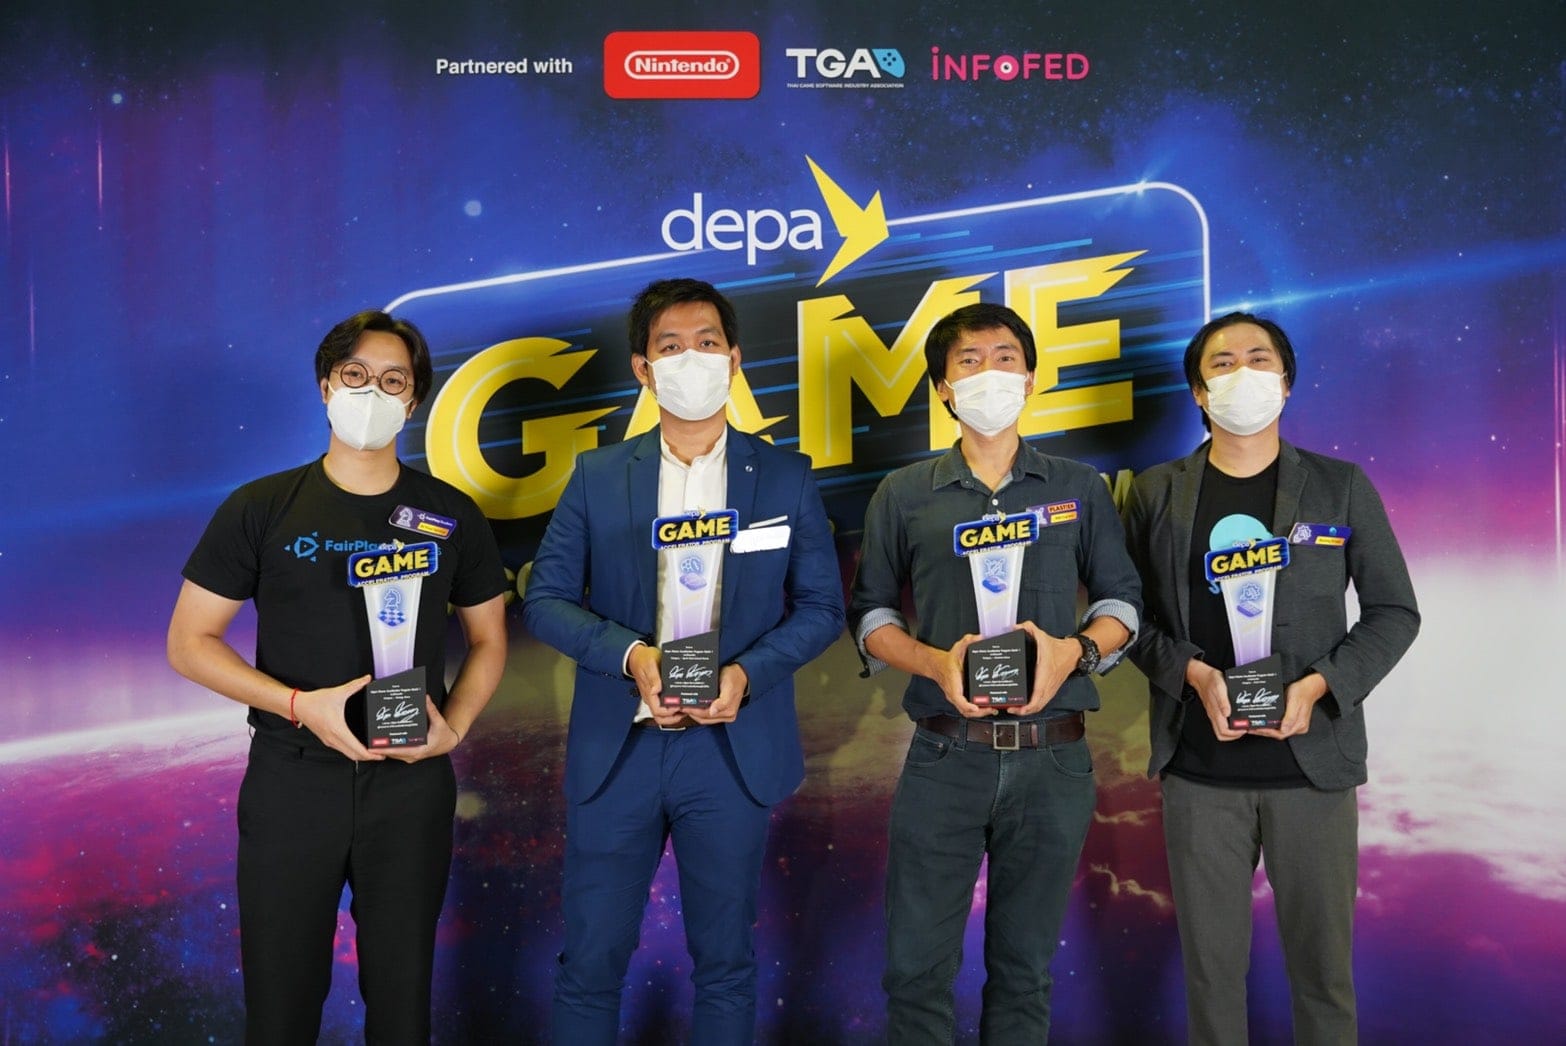 depa ผนึก TGA - อินโฟเฟด ประกาศผลสุดยอด 4 ทีมพัฒนาเกมสัญชาติไทย ในโครงการ depa Game Accelerator Program พร้อมปั้นสู่ระดับโลก 3